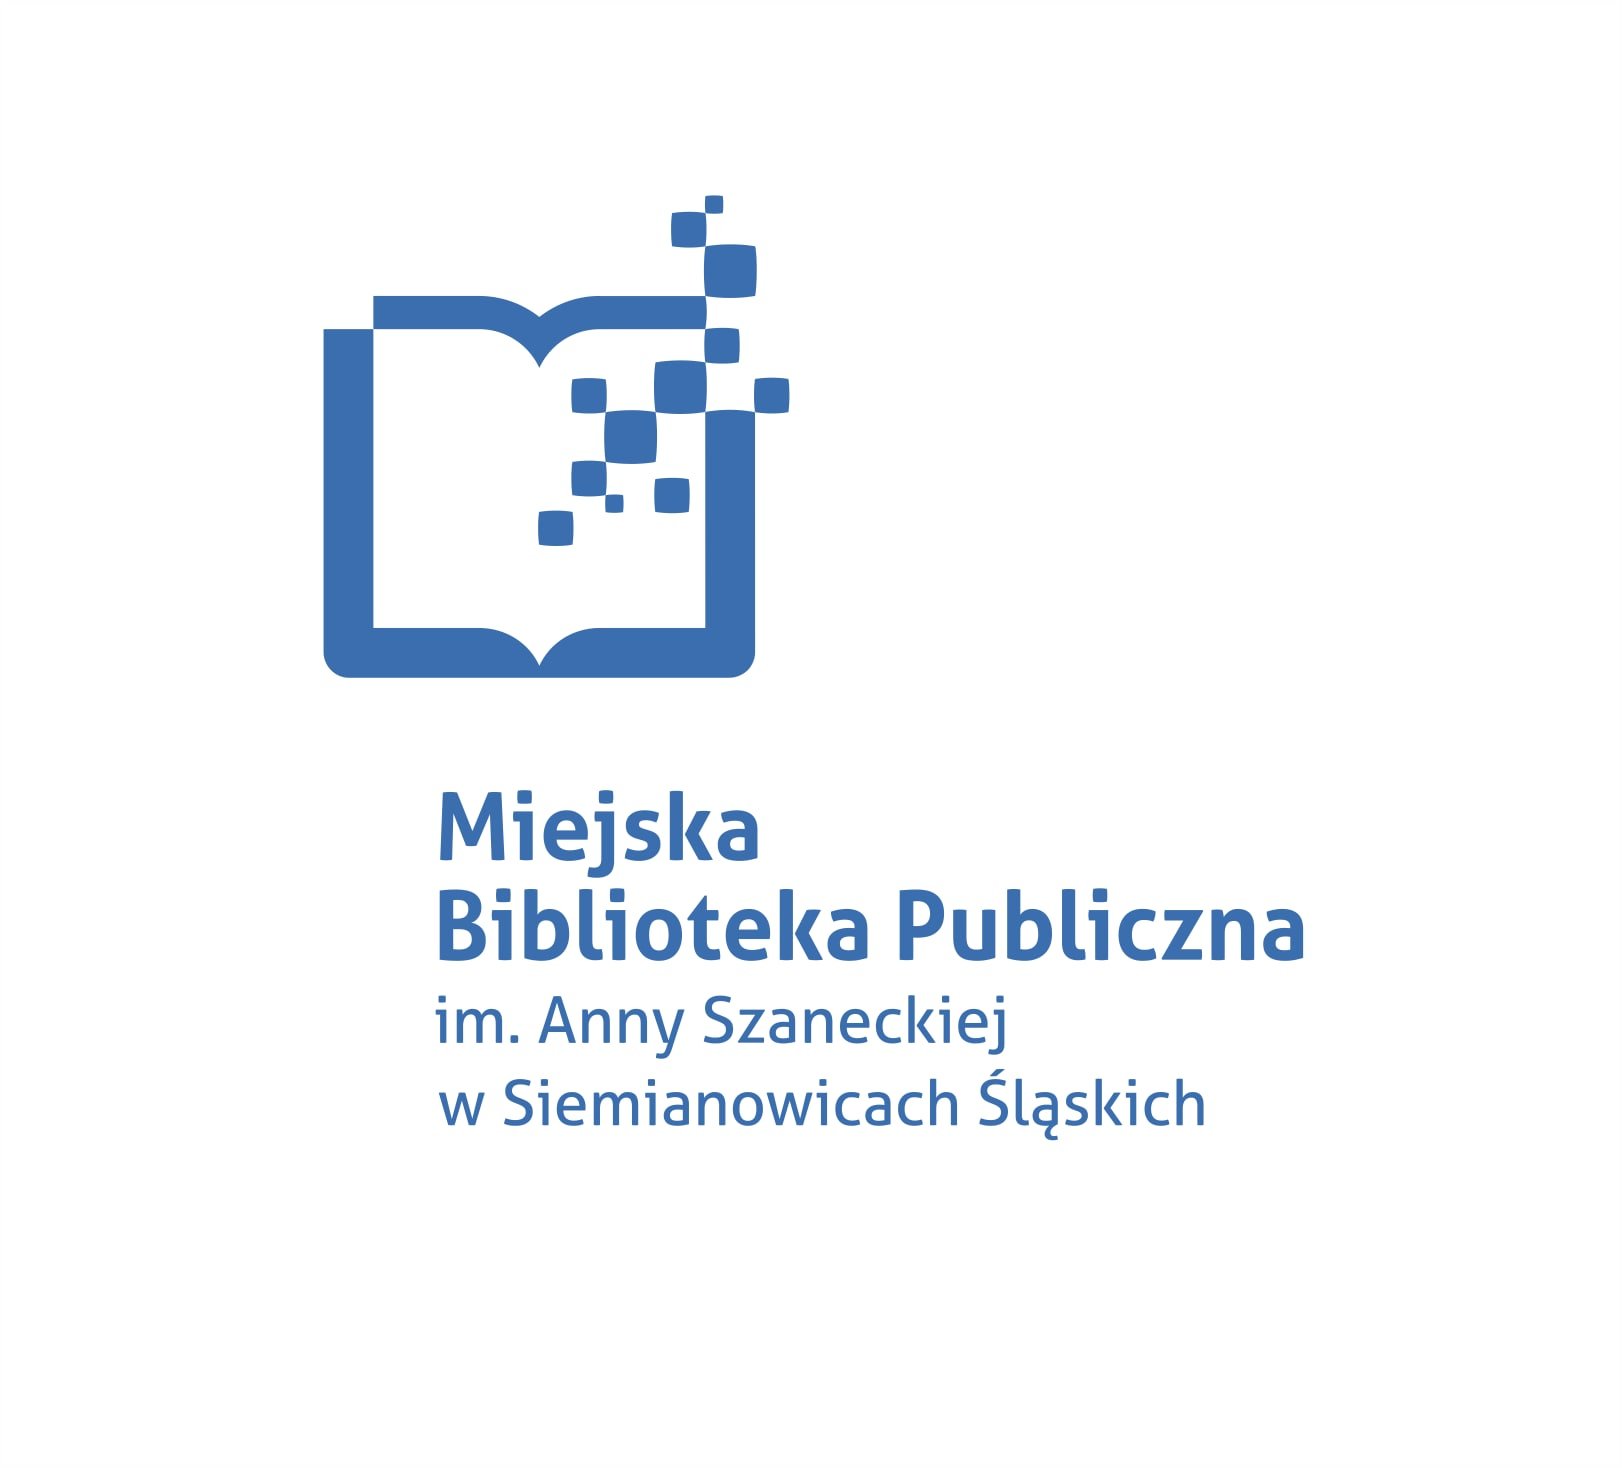 Logo Miejska Biblioteka Publiczna im. Anny Szaneckiej w Siemianowicach lskich